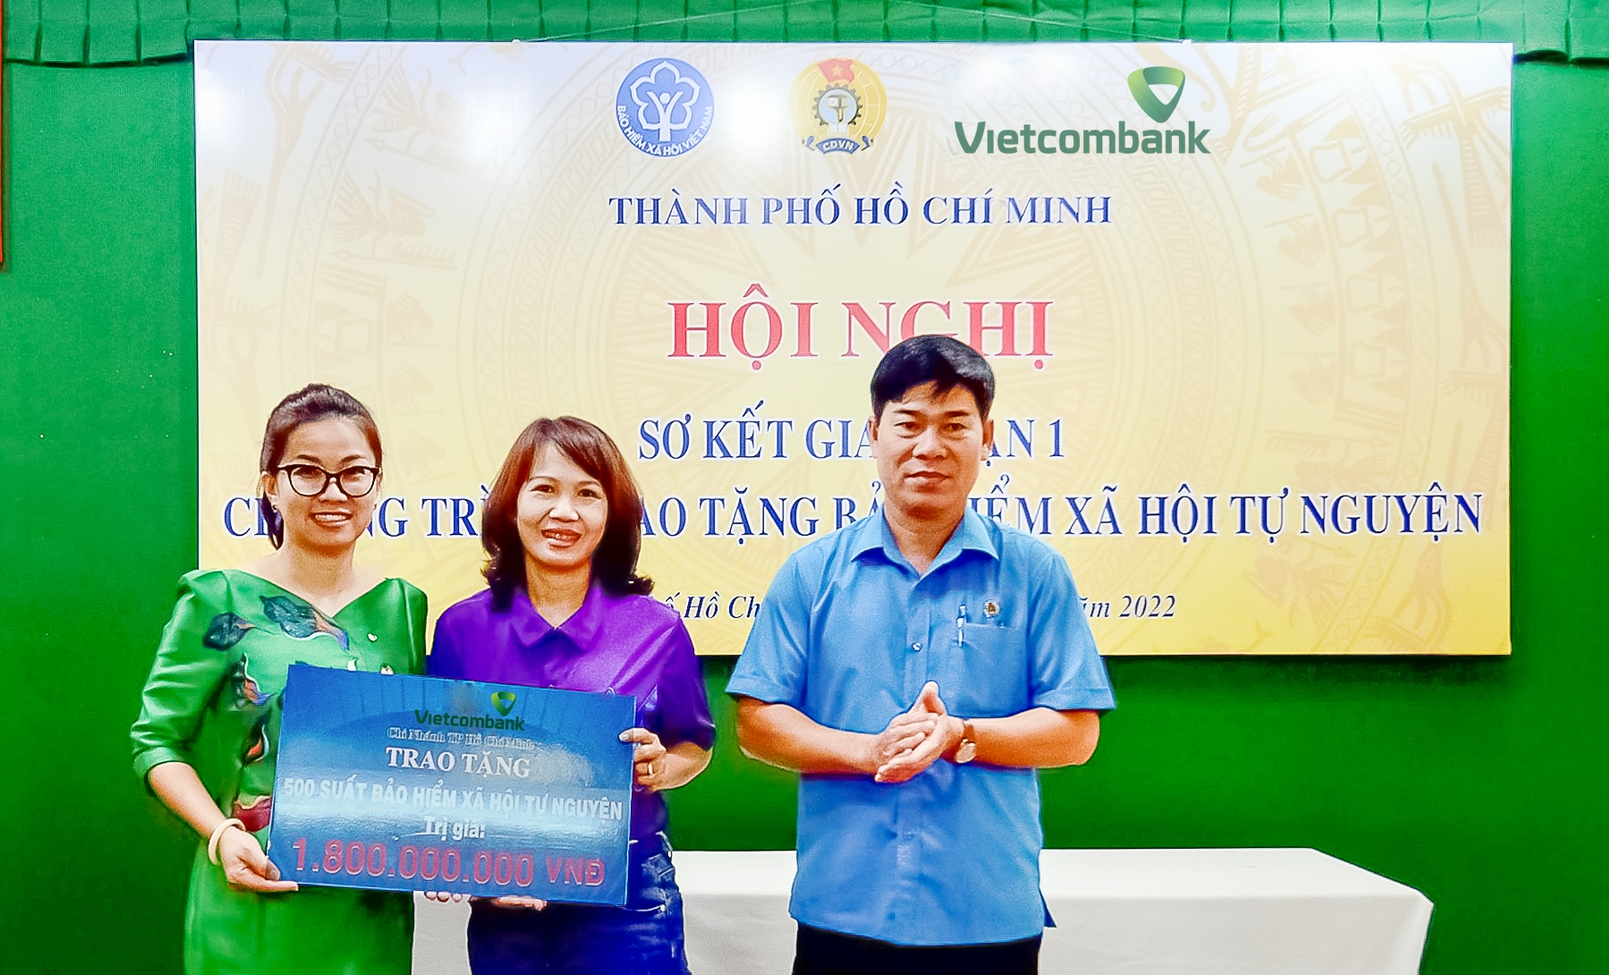 Bà Lê Thị Hòa Bình - Phó Giám đốc Vietcombank TP.HCM (bên trái) trao bảng tượng trưng tái tục BHXH trị giá 1,8 tỷ đồng cho đại diện đoàn viên các nghiệp đoàn nhận BHXH năm 2021